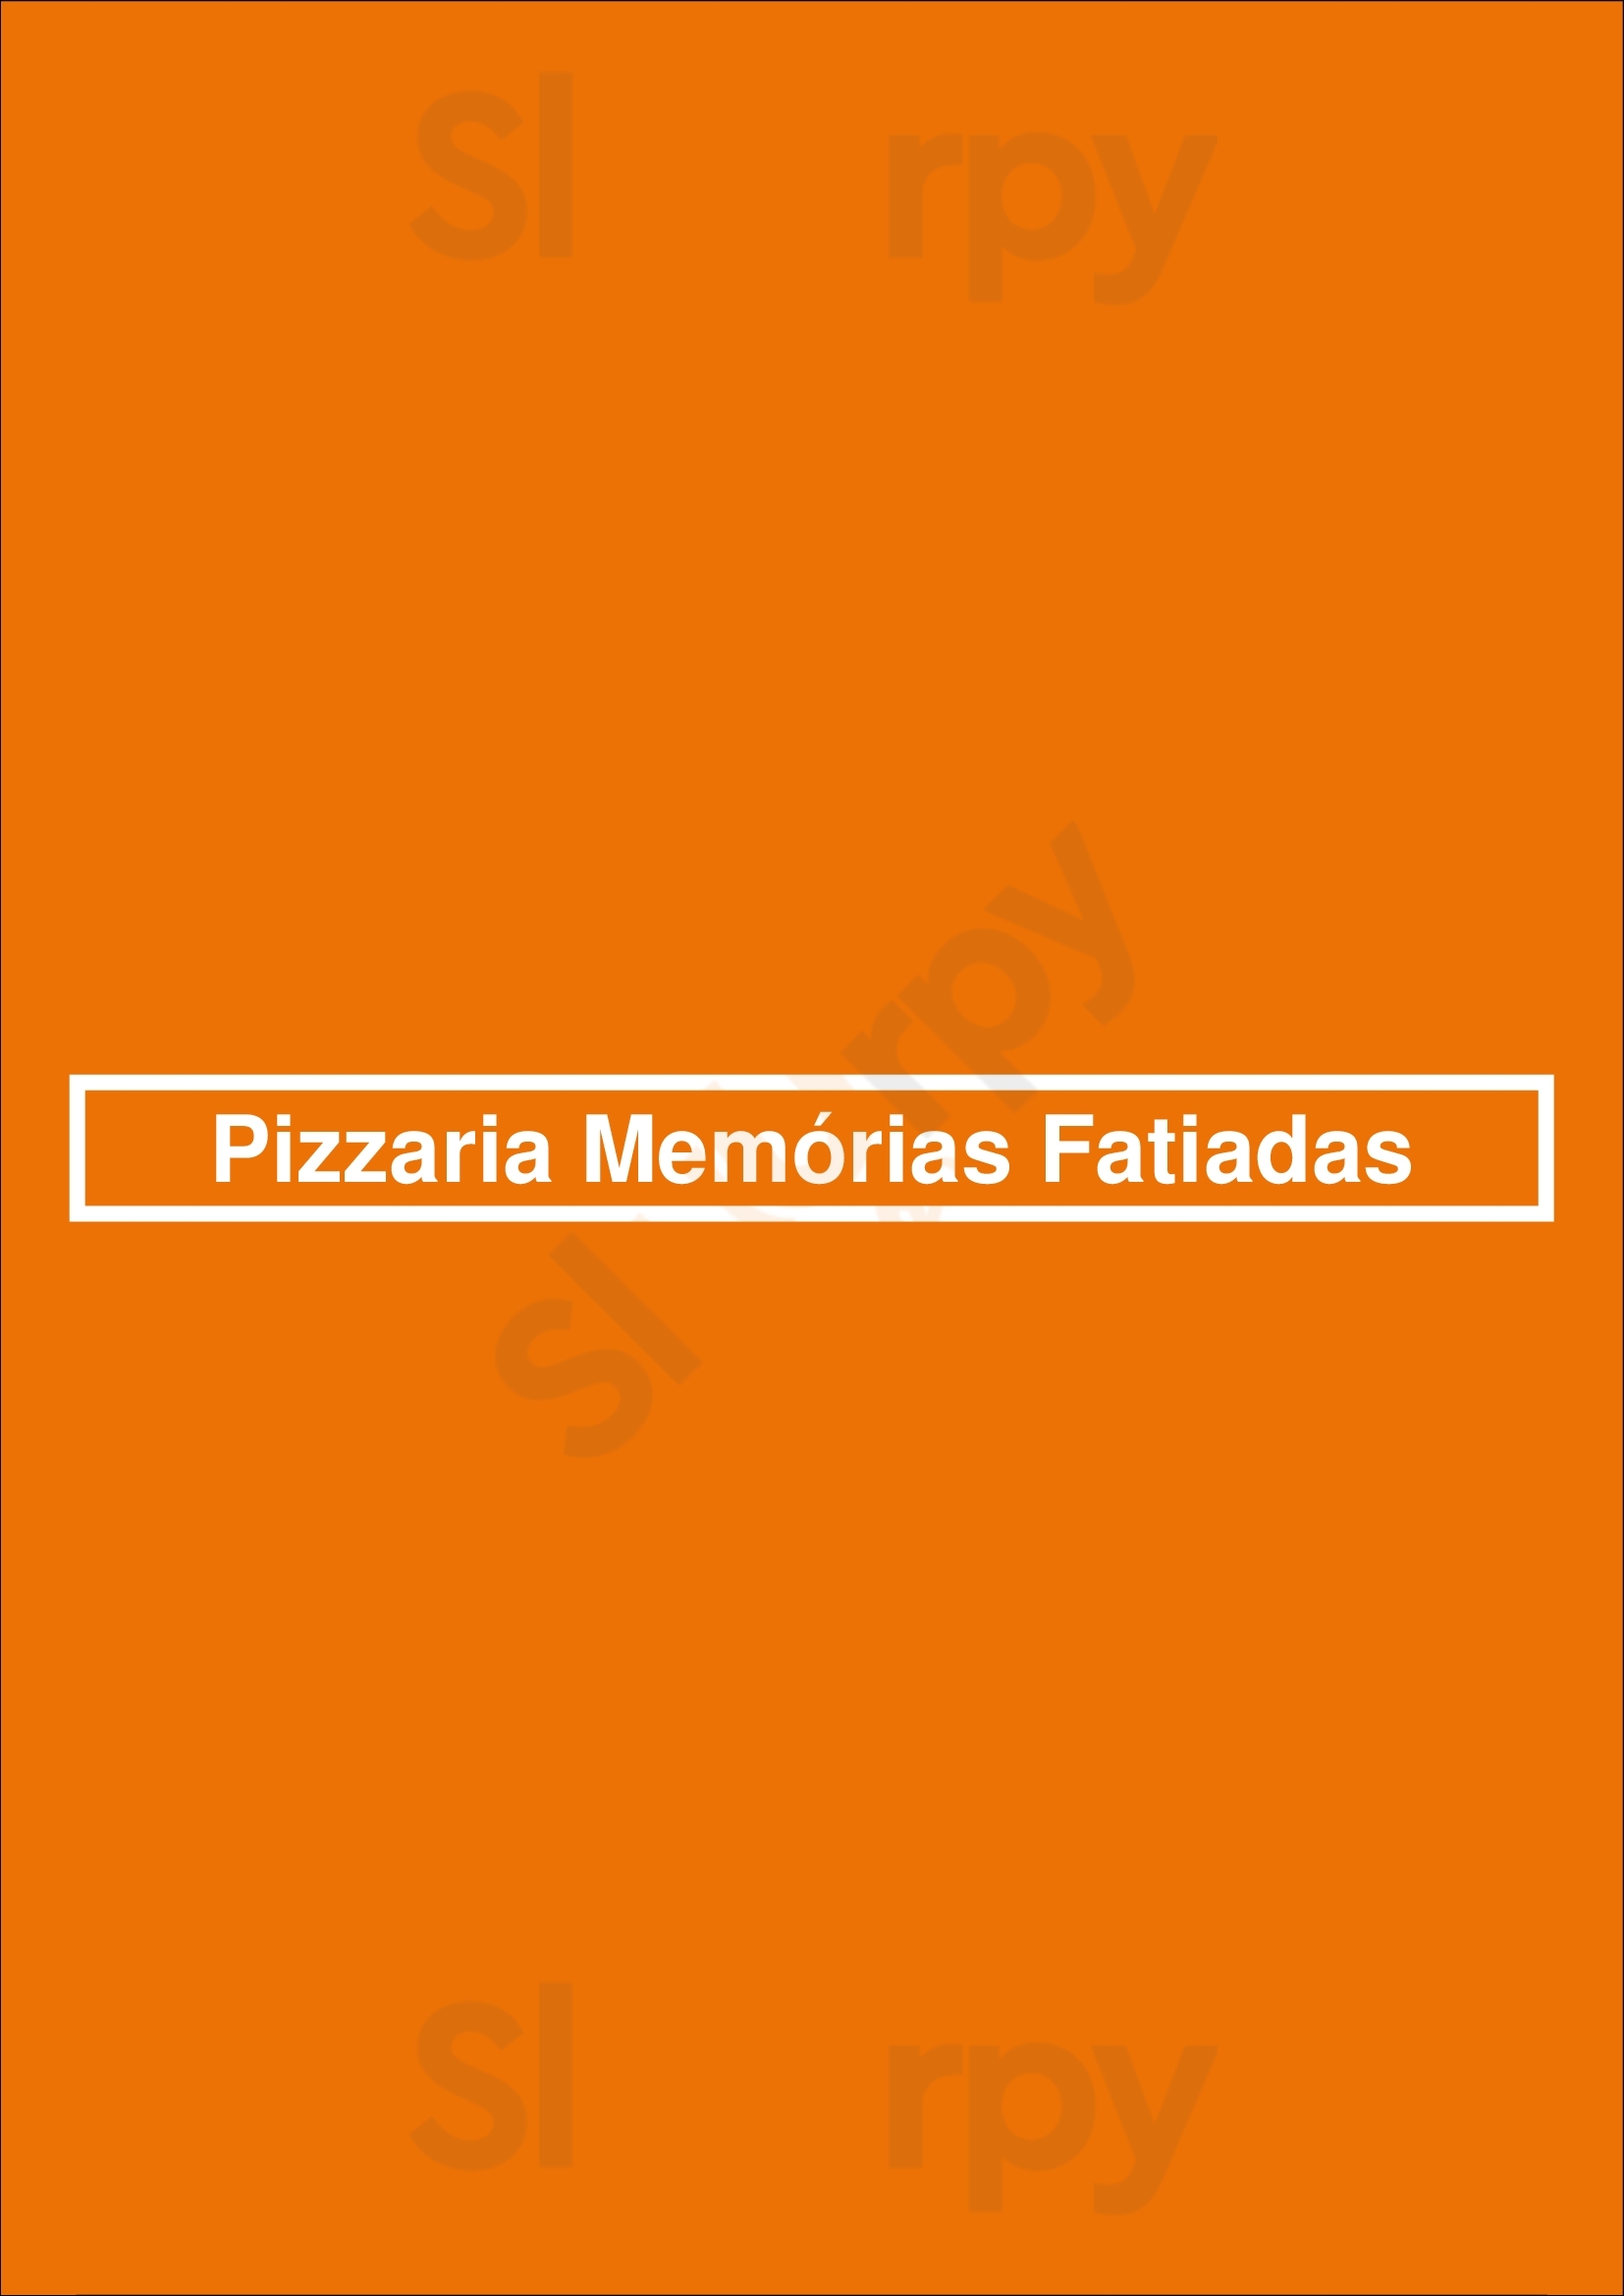 Pizzaria Memórias Fatiadas Carnaxide Menu - 1